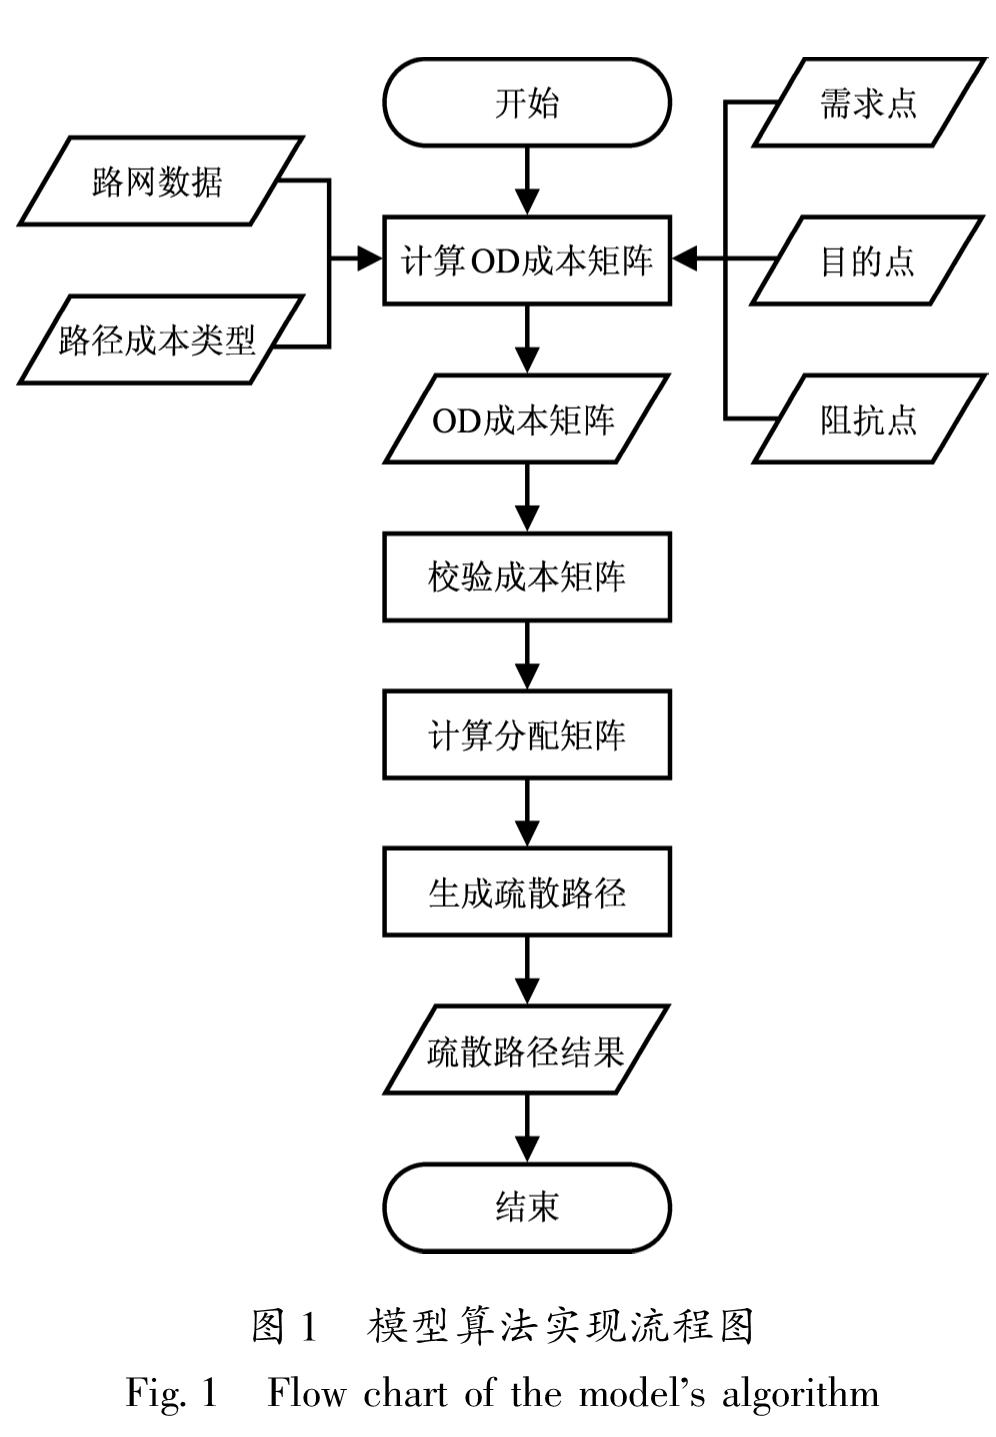 图1 模型算法实现流程图<br/>Fig.1 Flow chart of the model's algorithm